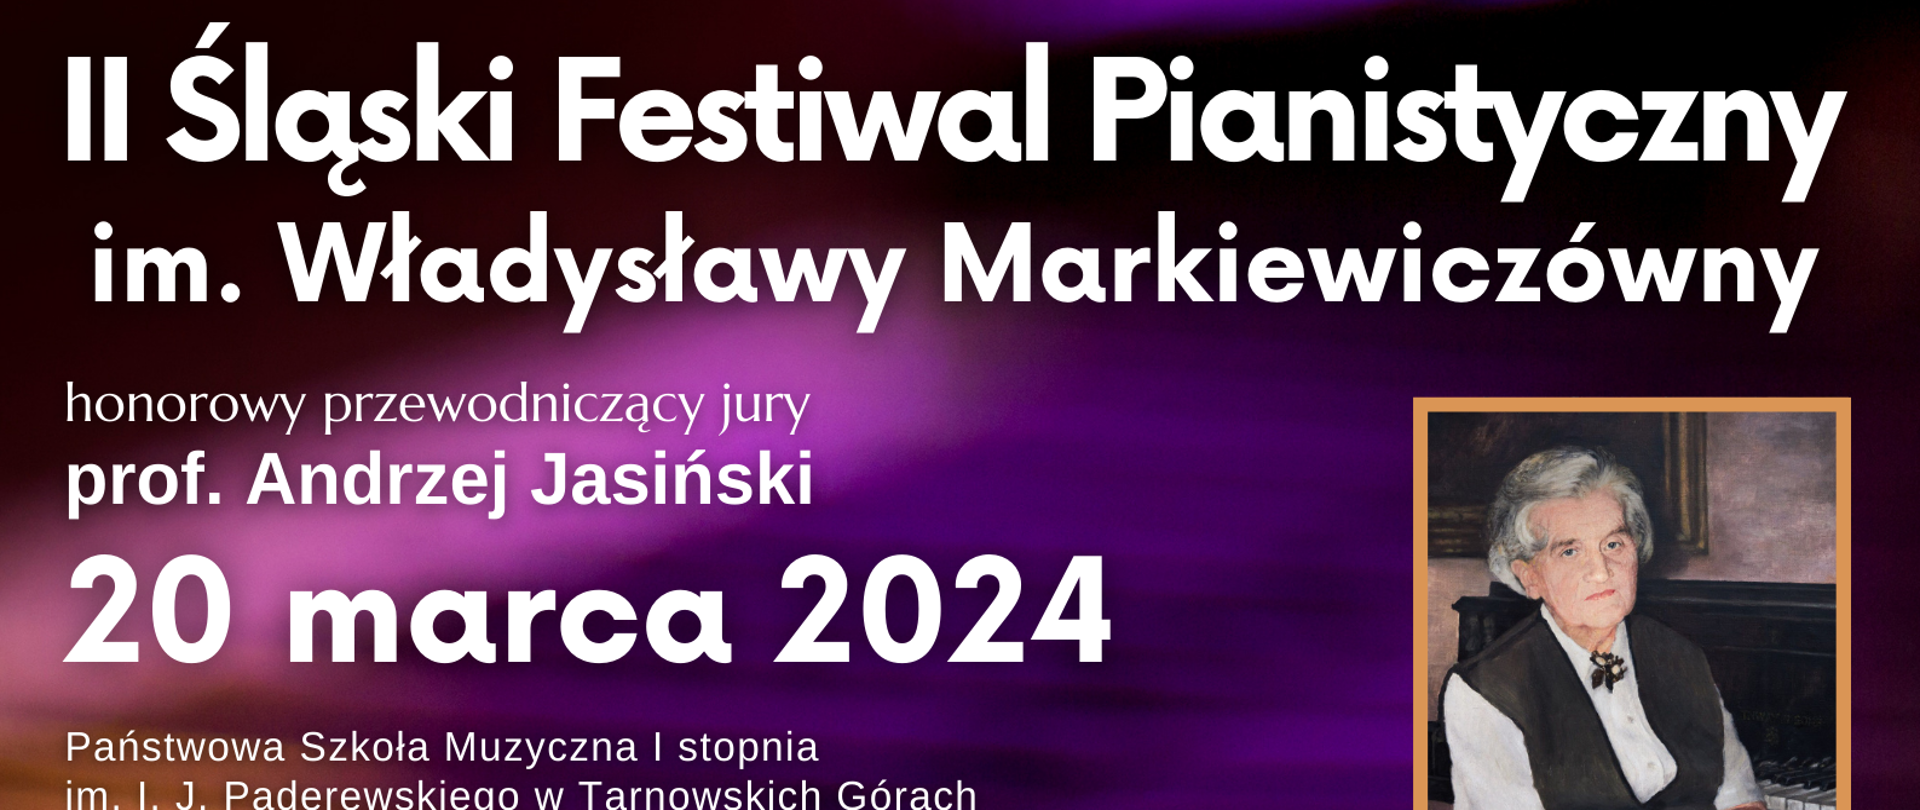 Na tle klawiatury fortepianowej informacja o II Śląskim Festiwalu Pianistycznym im. Władysławy Markiewiczówny